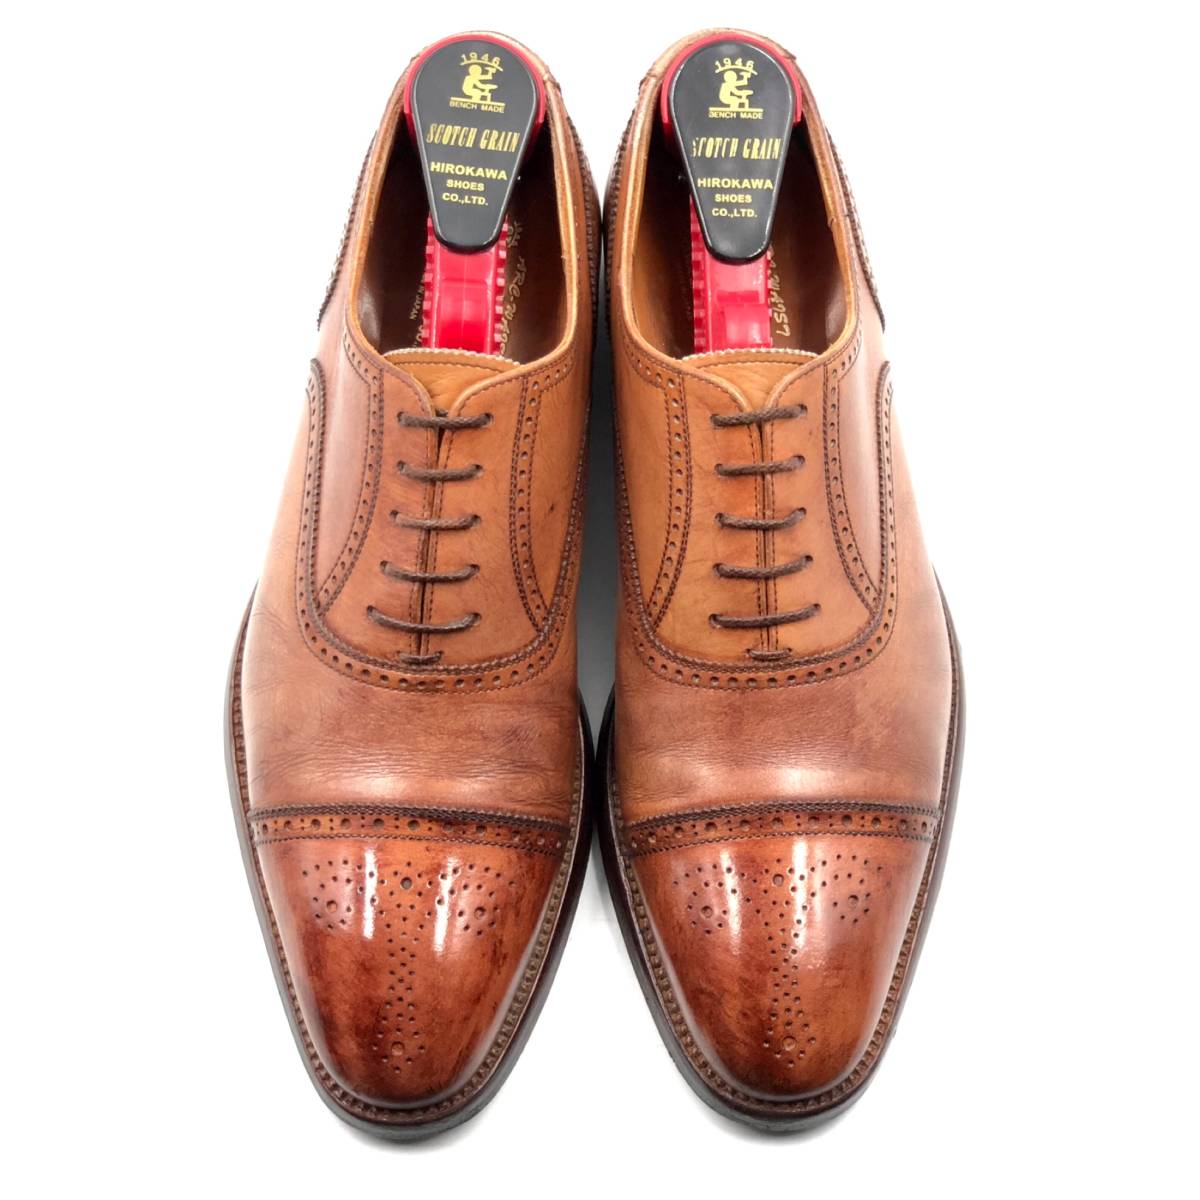 即決 SCOTCH GRAIN スコッチグレイン オデッサ 24cmE 920MBR メンズ レザーシューズ ストレートチップ 茶 ブラウン 革靴 皮靴 ビジネス - 1